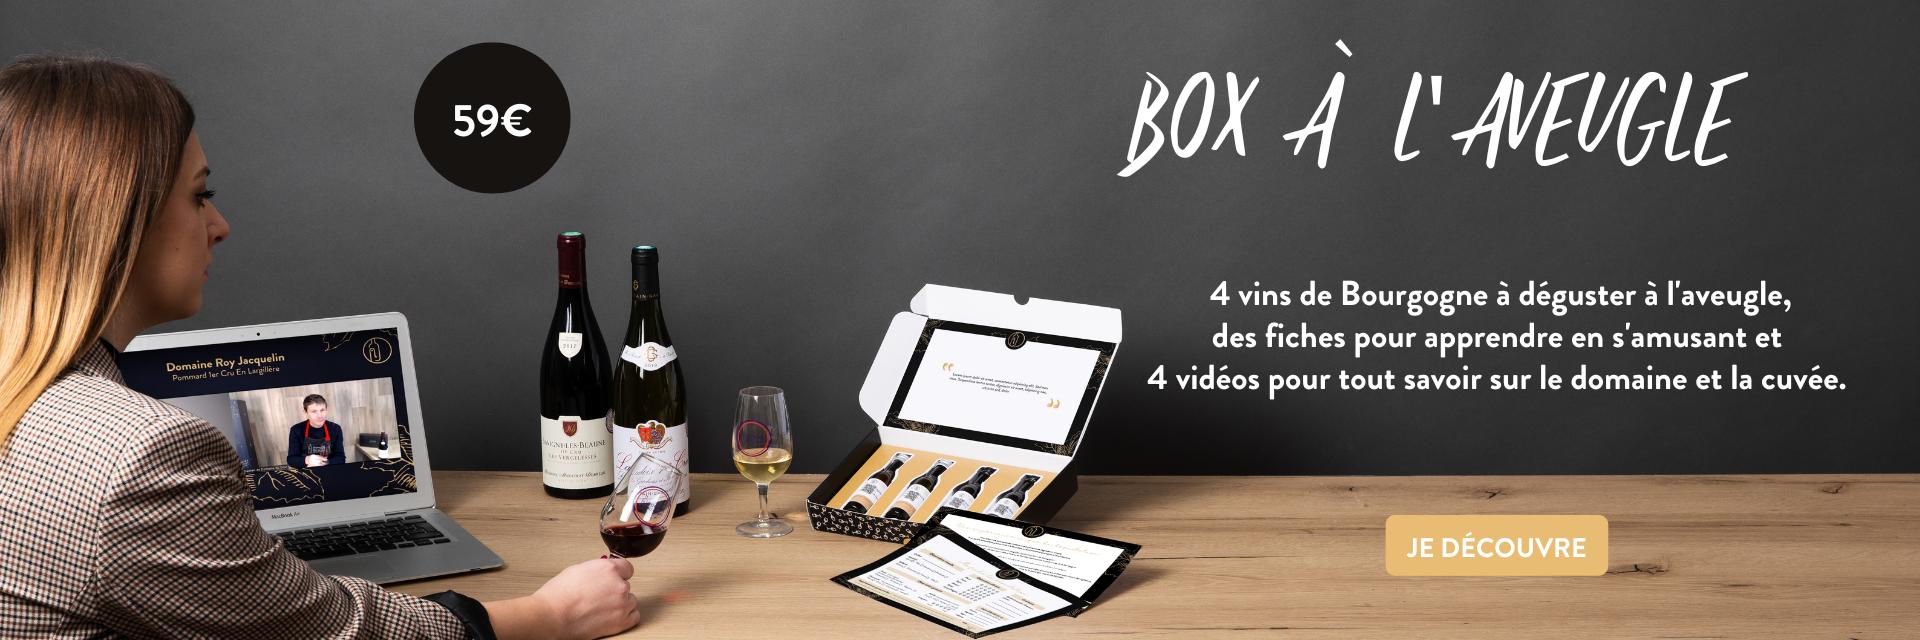 Box de vins à l'aveugle domaine du goût fiches vins et vidéo du vigneron